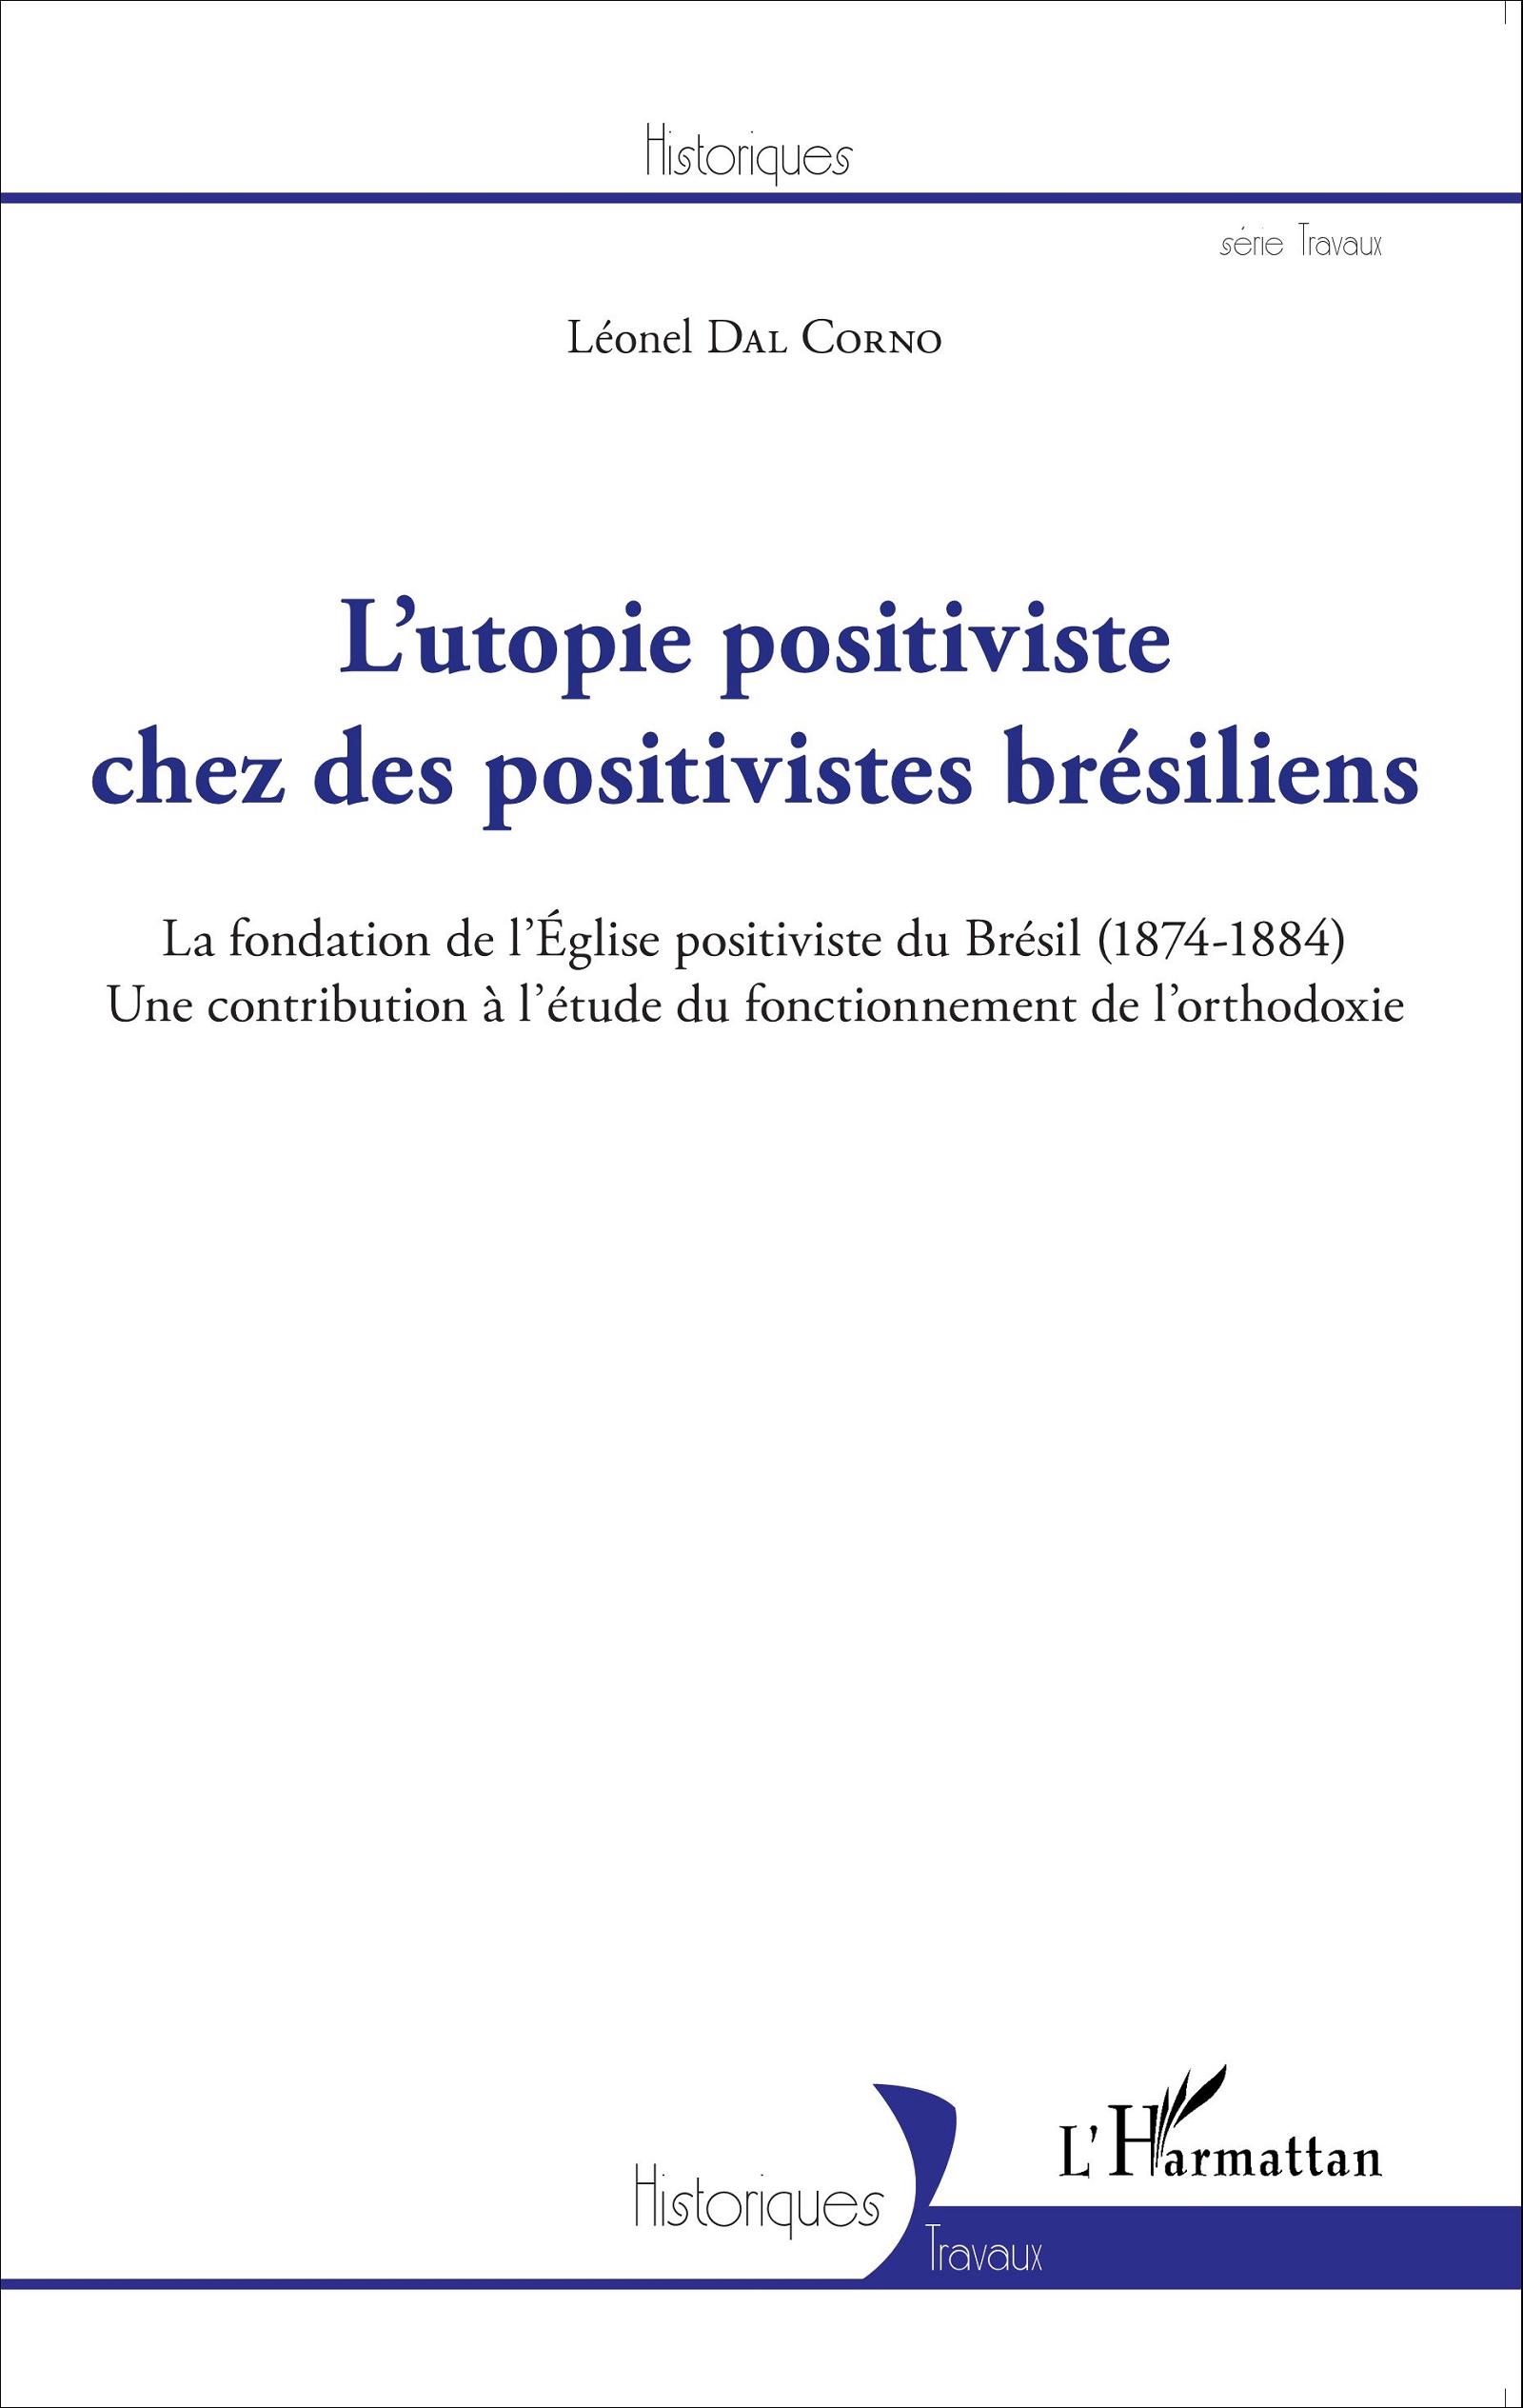 L'utopie positiviste chez des positivistes brésiliens